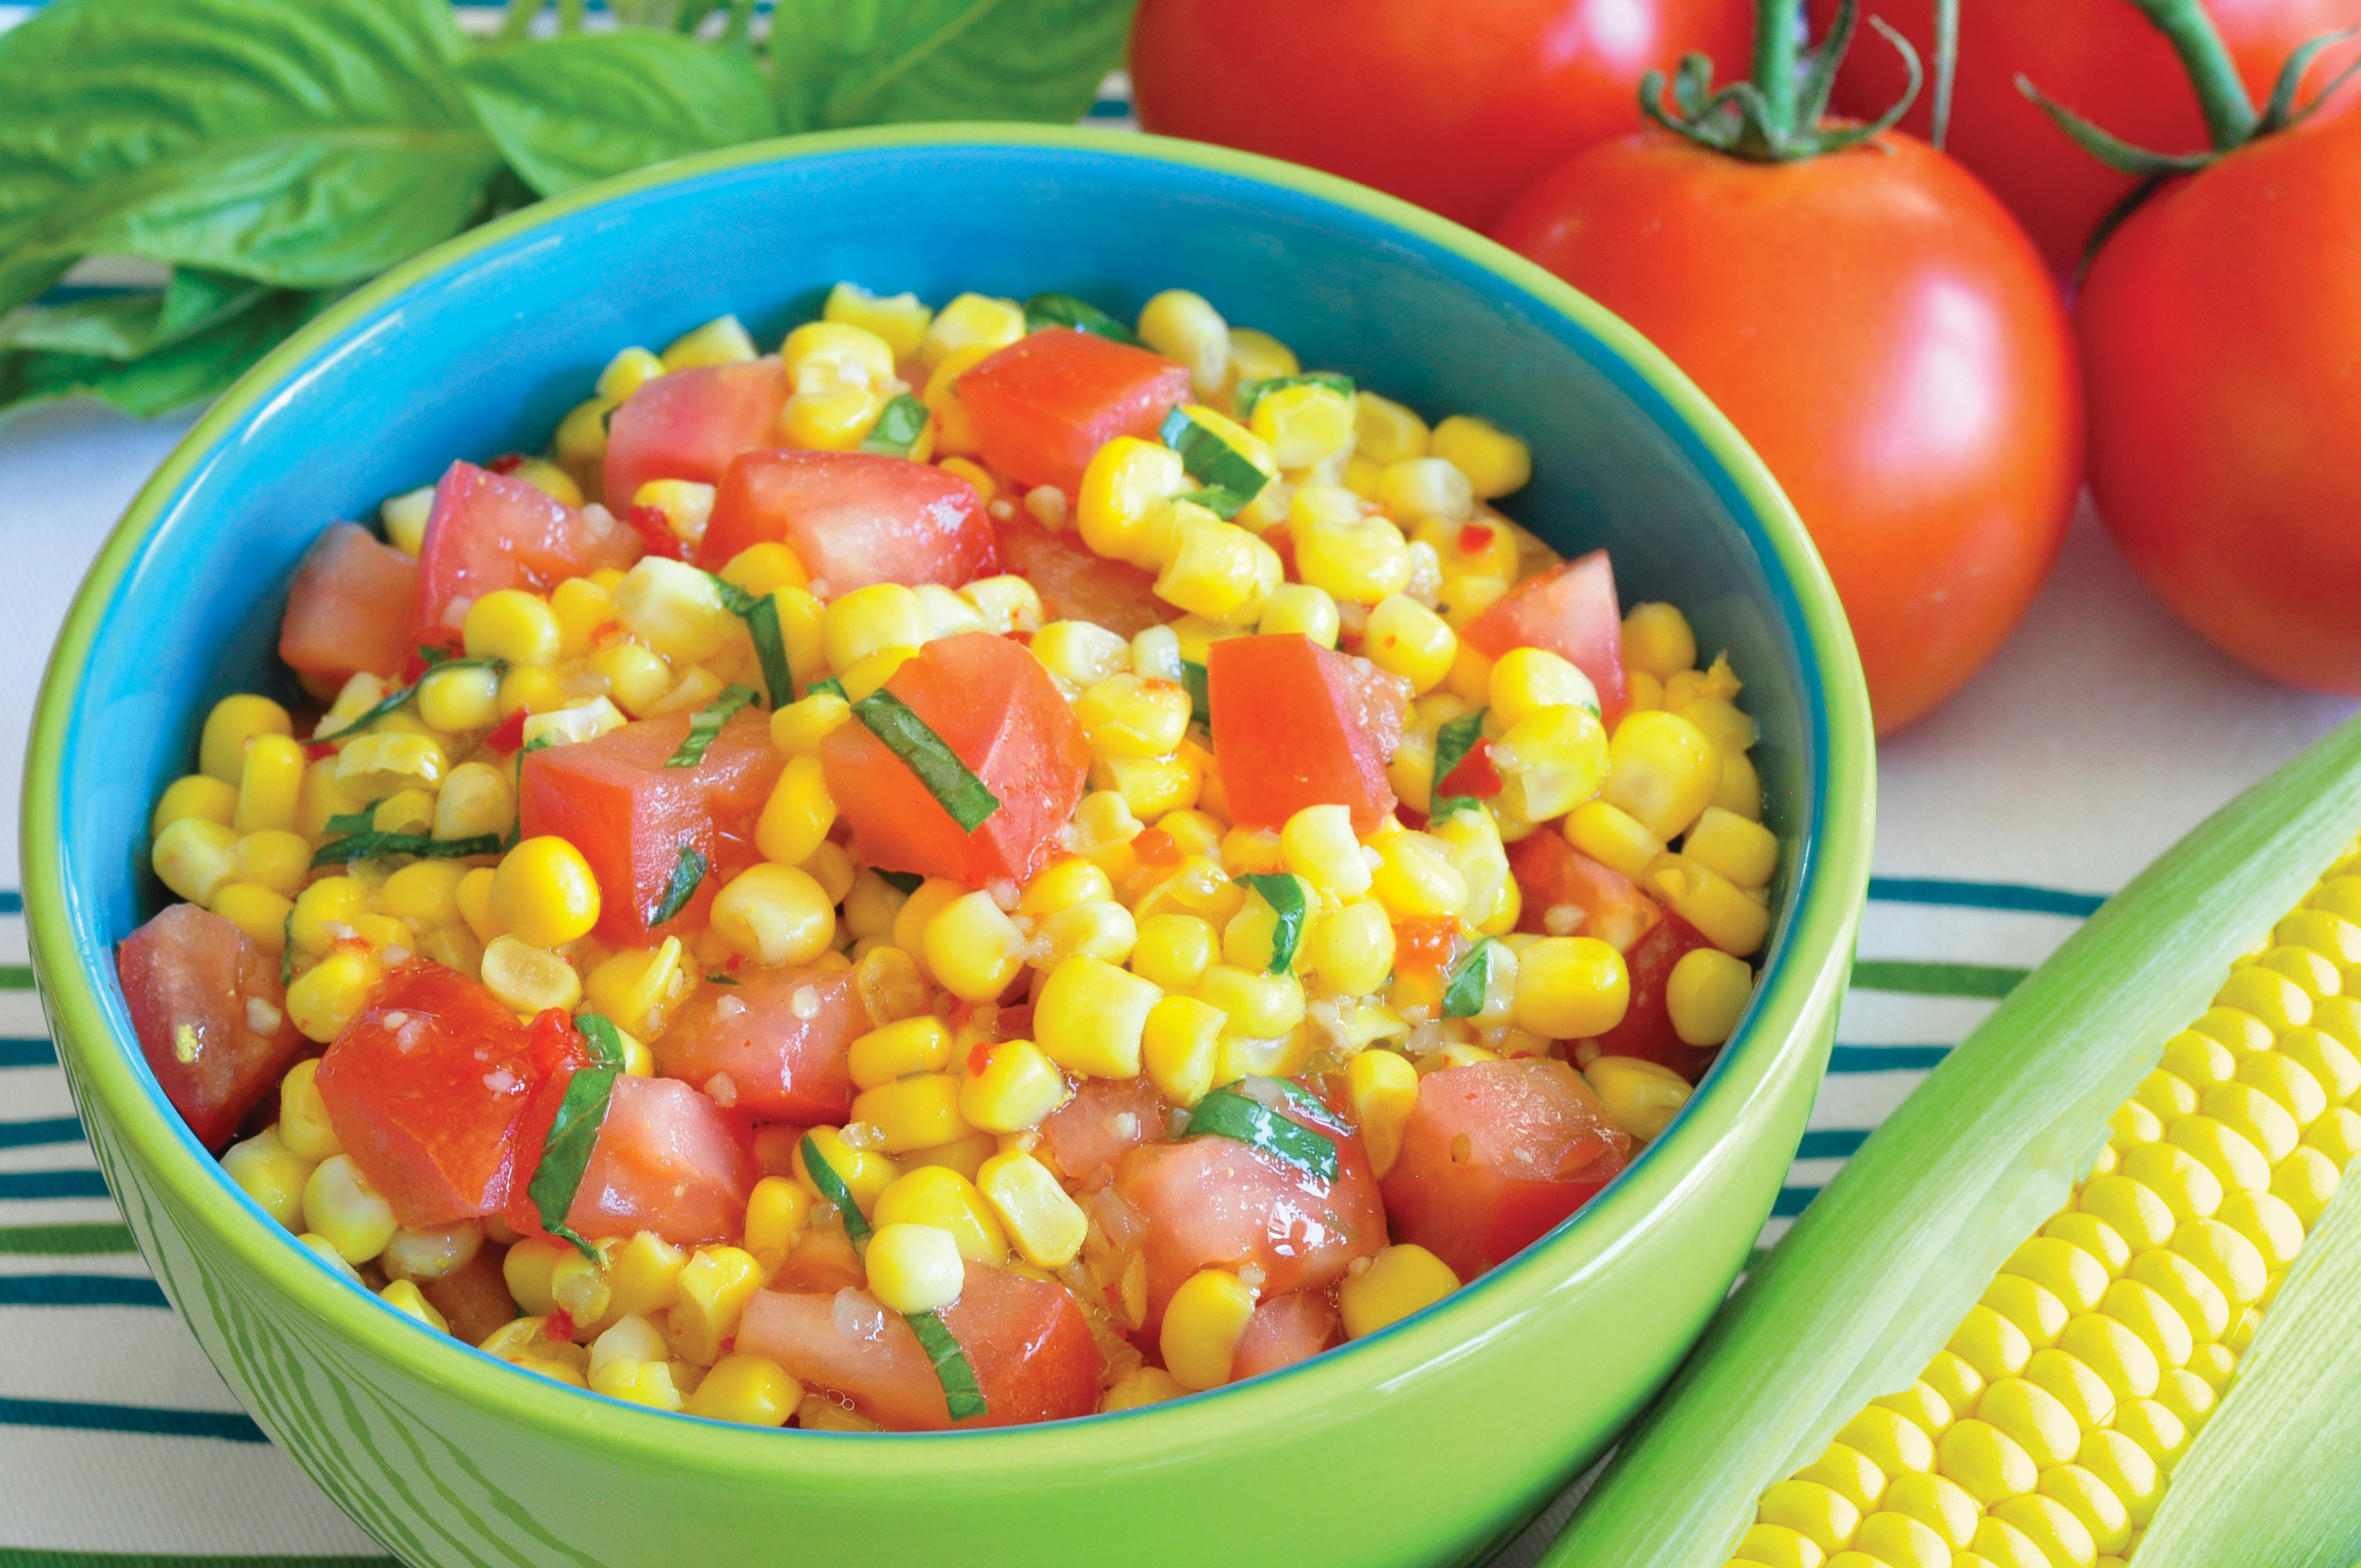 Corn and Tomato Salad in bright green bowl